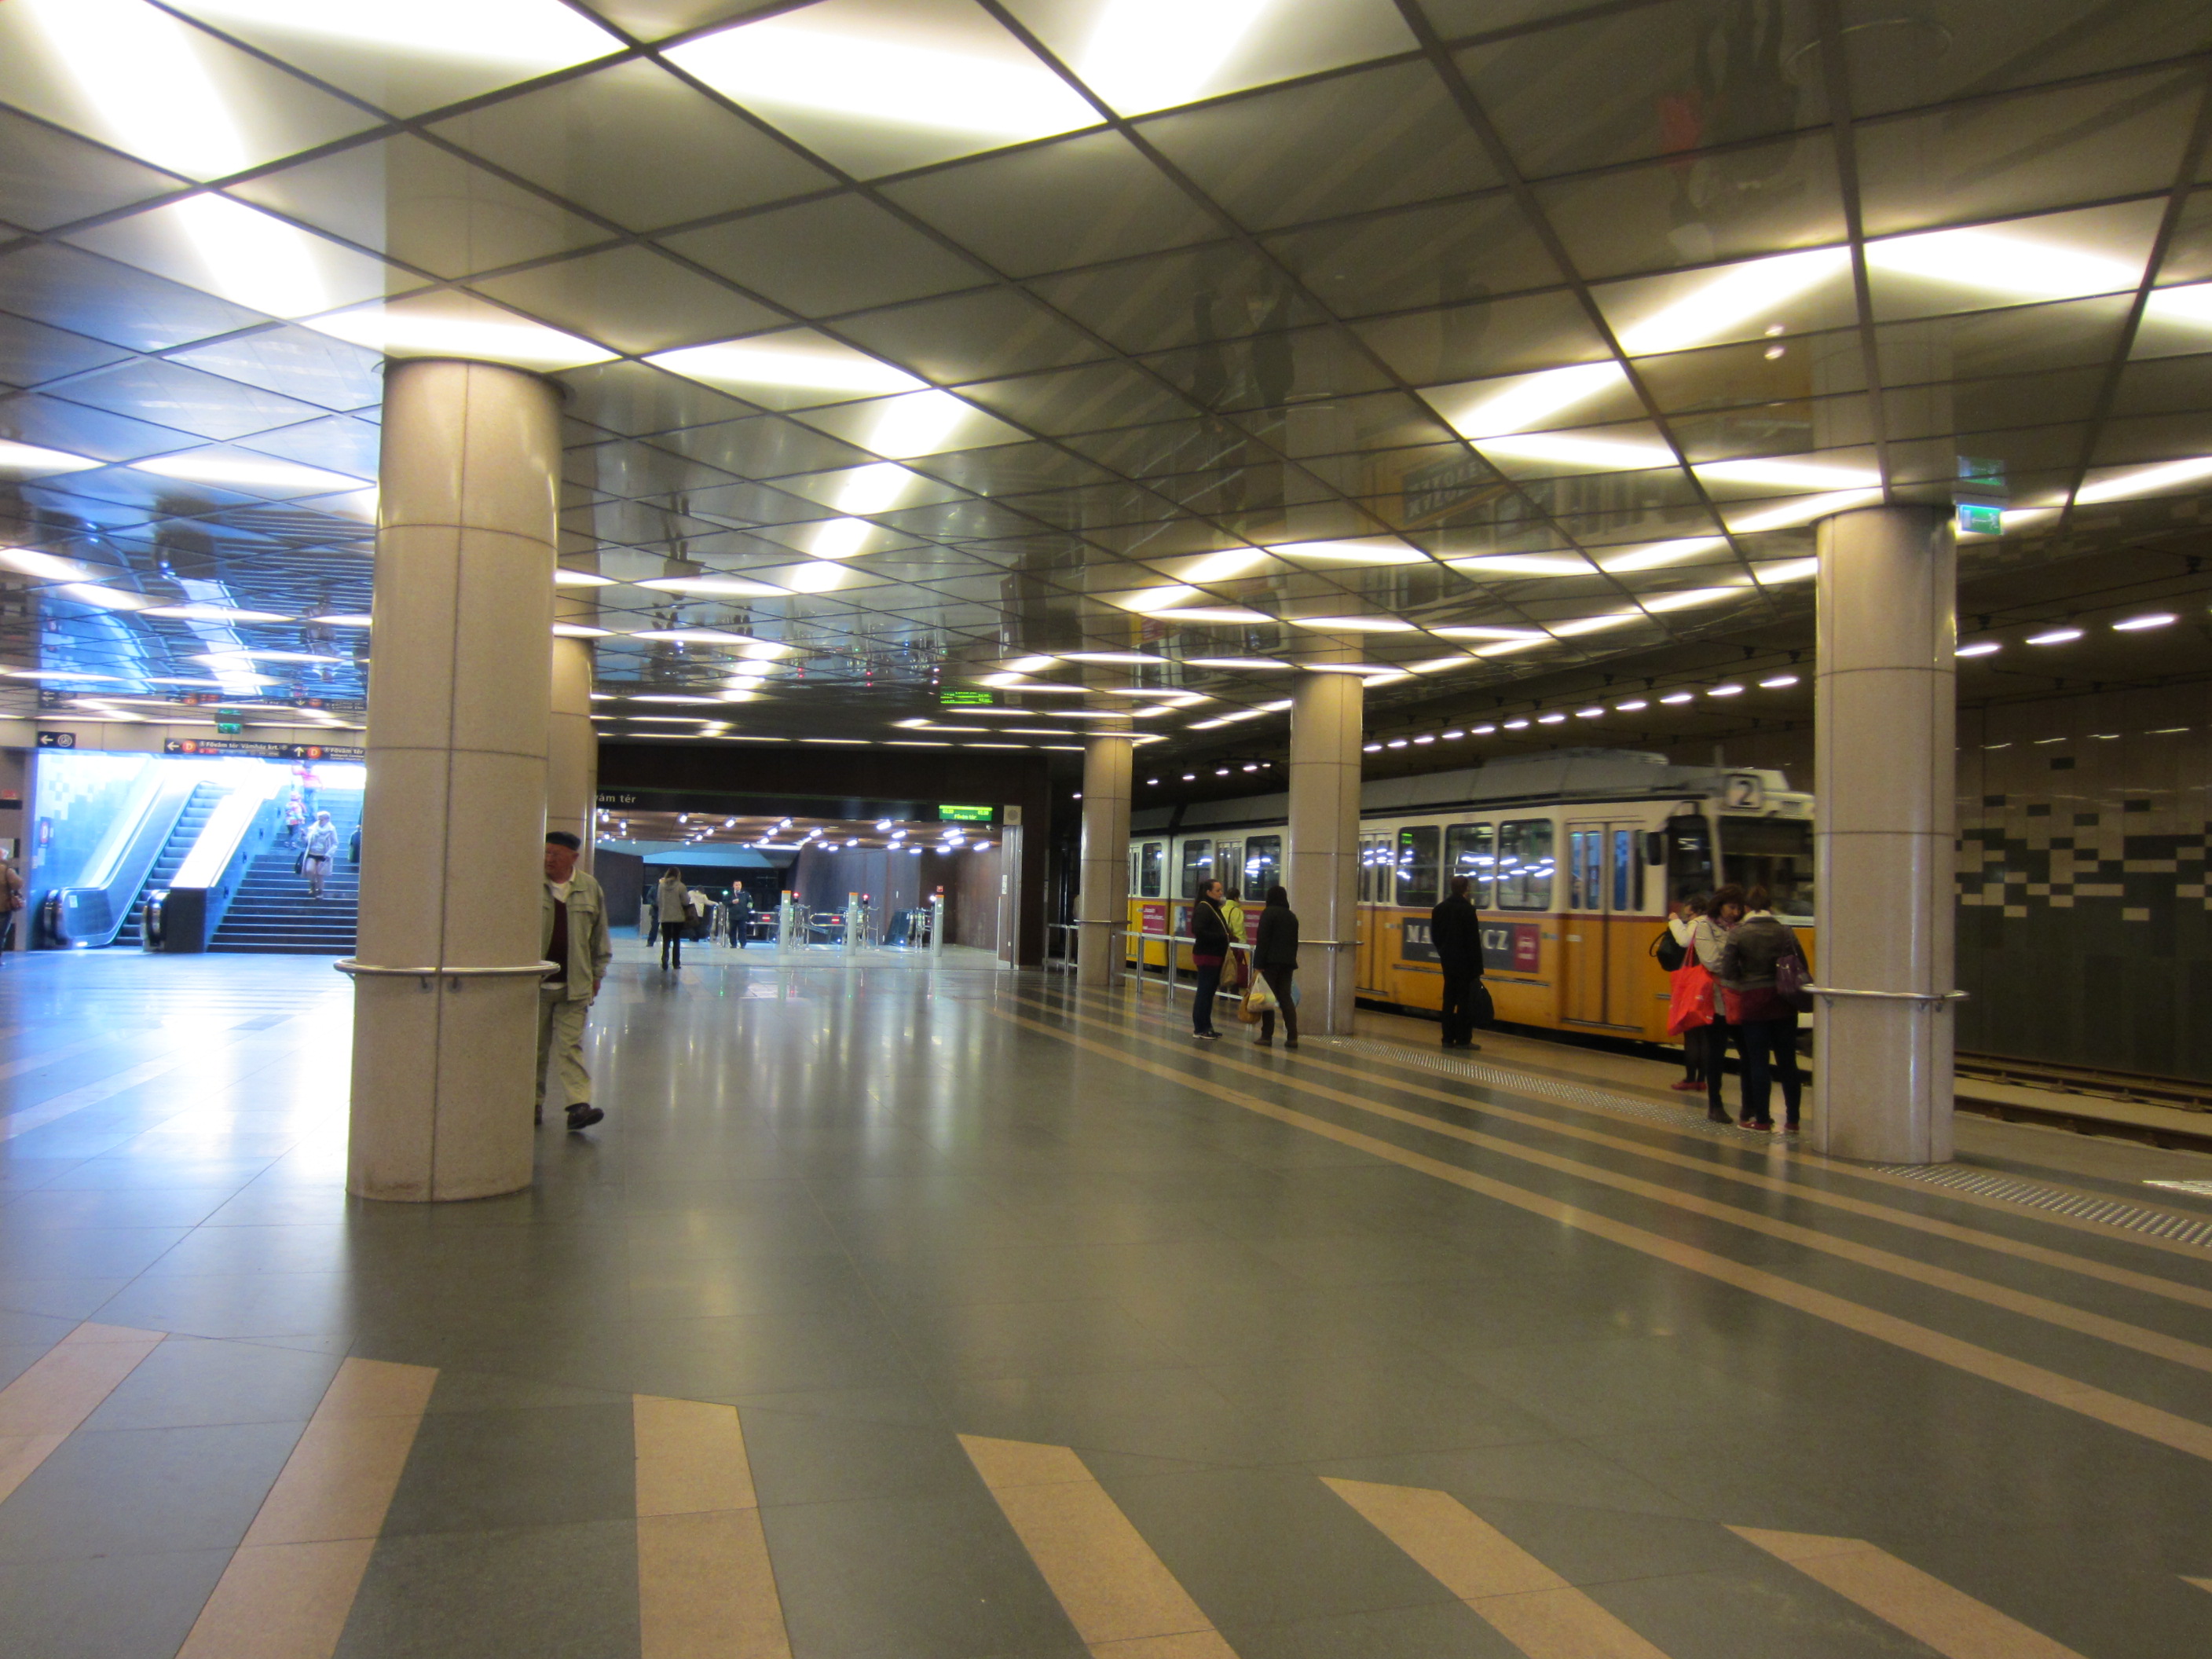 中央市場最寄駅フーヴァーム広場駅出口とトラム2号線乗り場